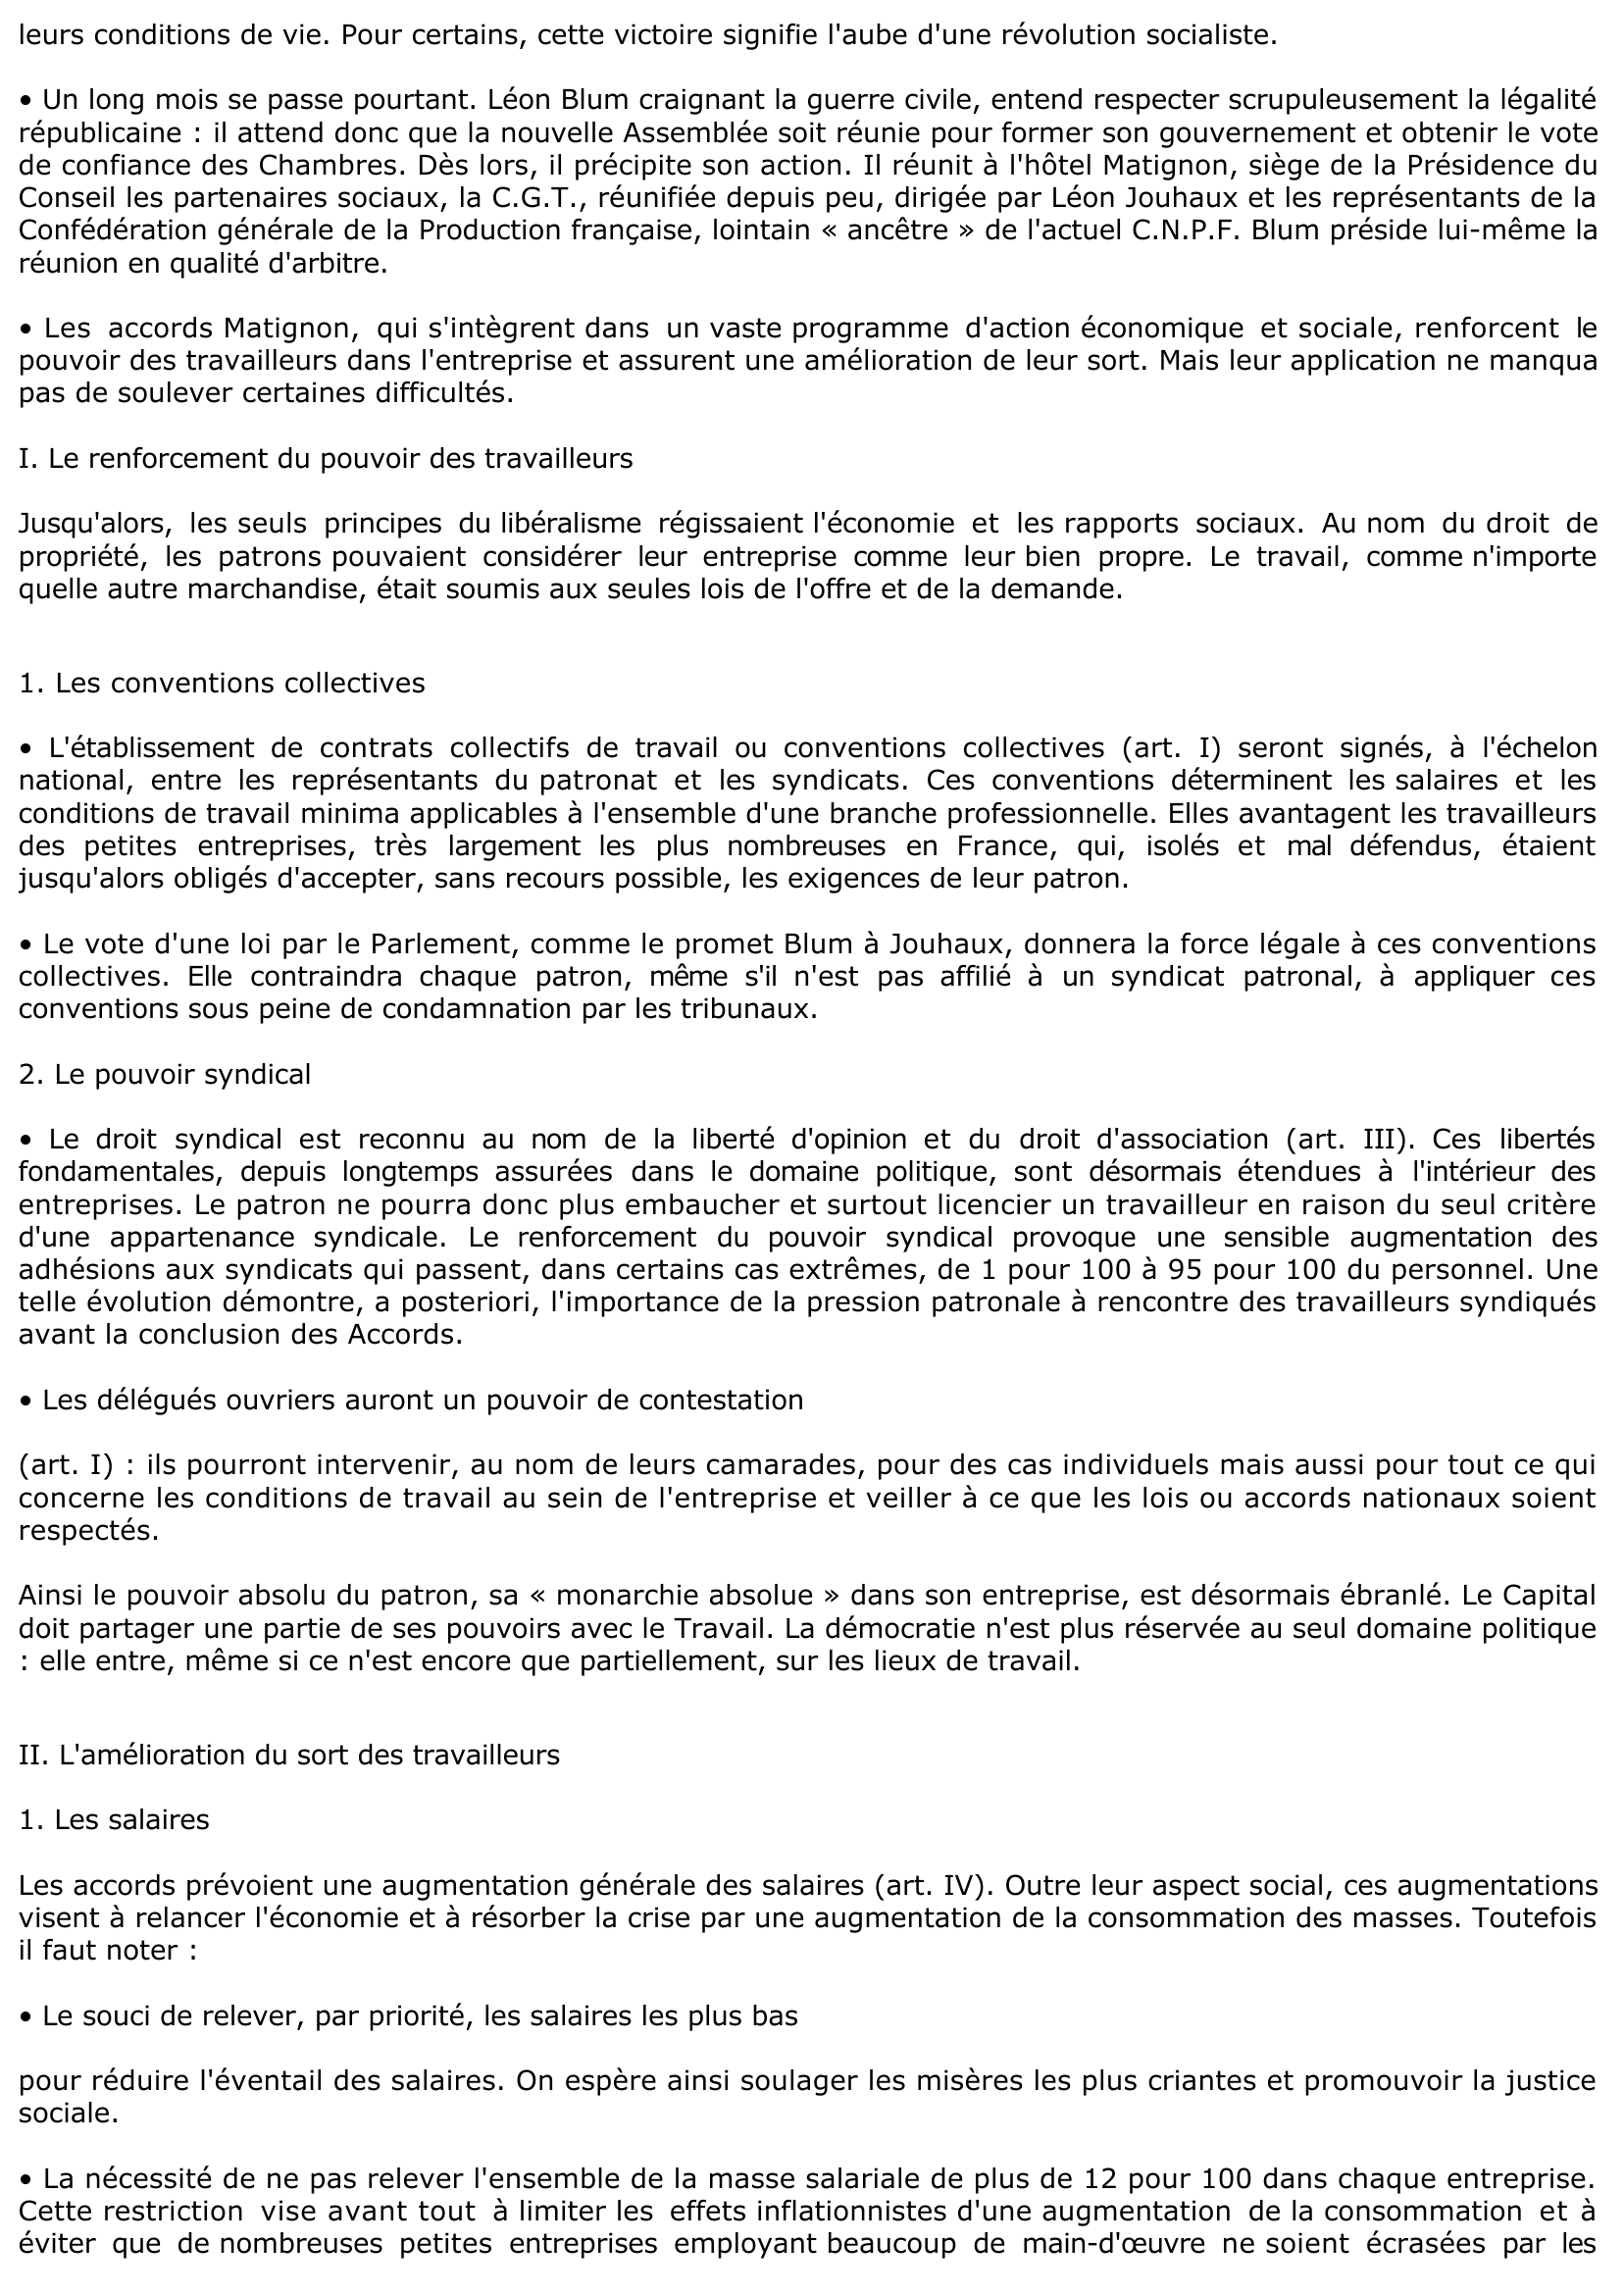 Prévisualisation du document Les accords Matignon : 8 juin 1936 (extraits)